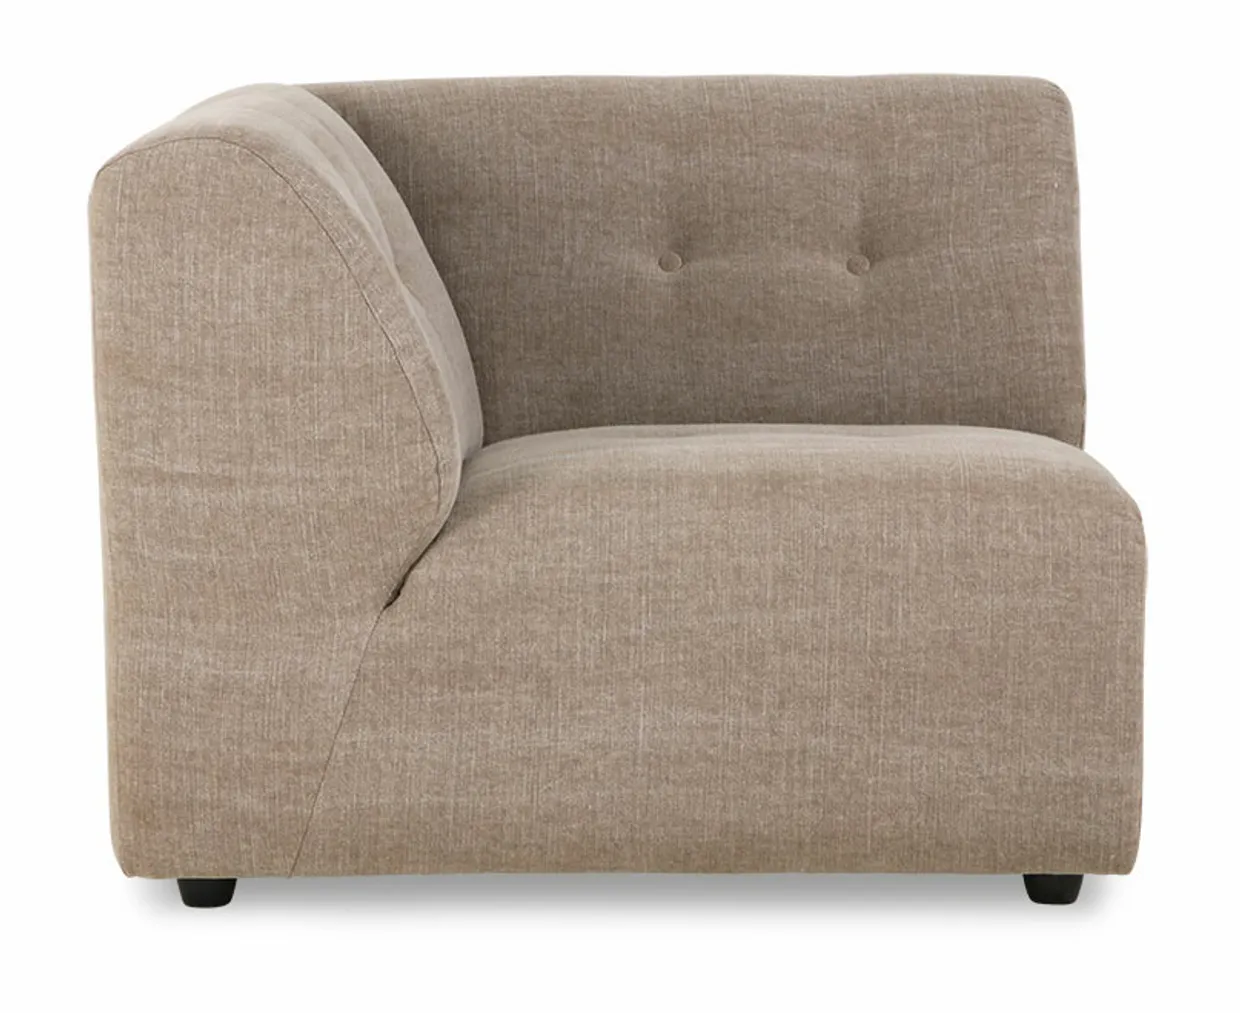 Vint couch: element left, linen blend, taupe